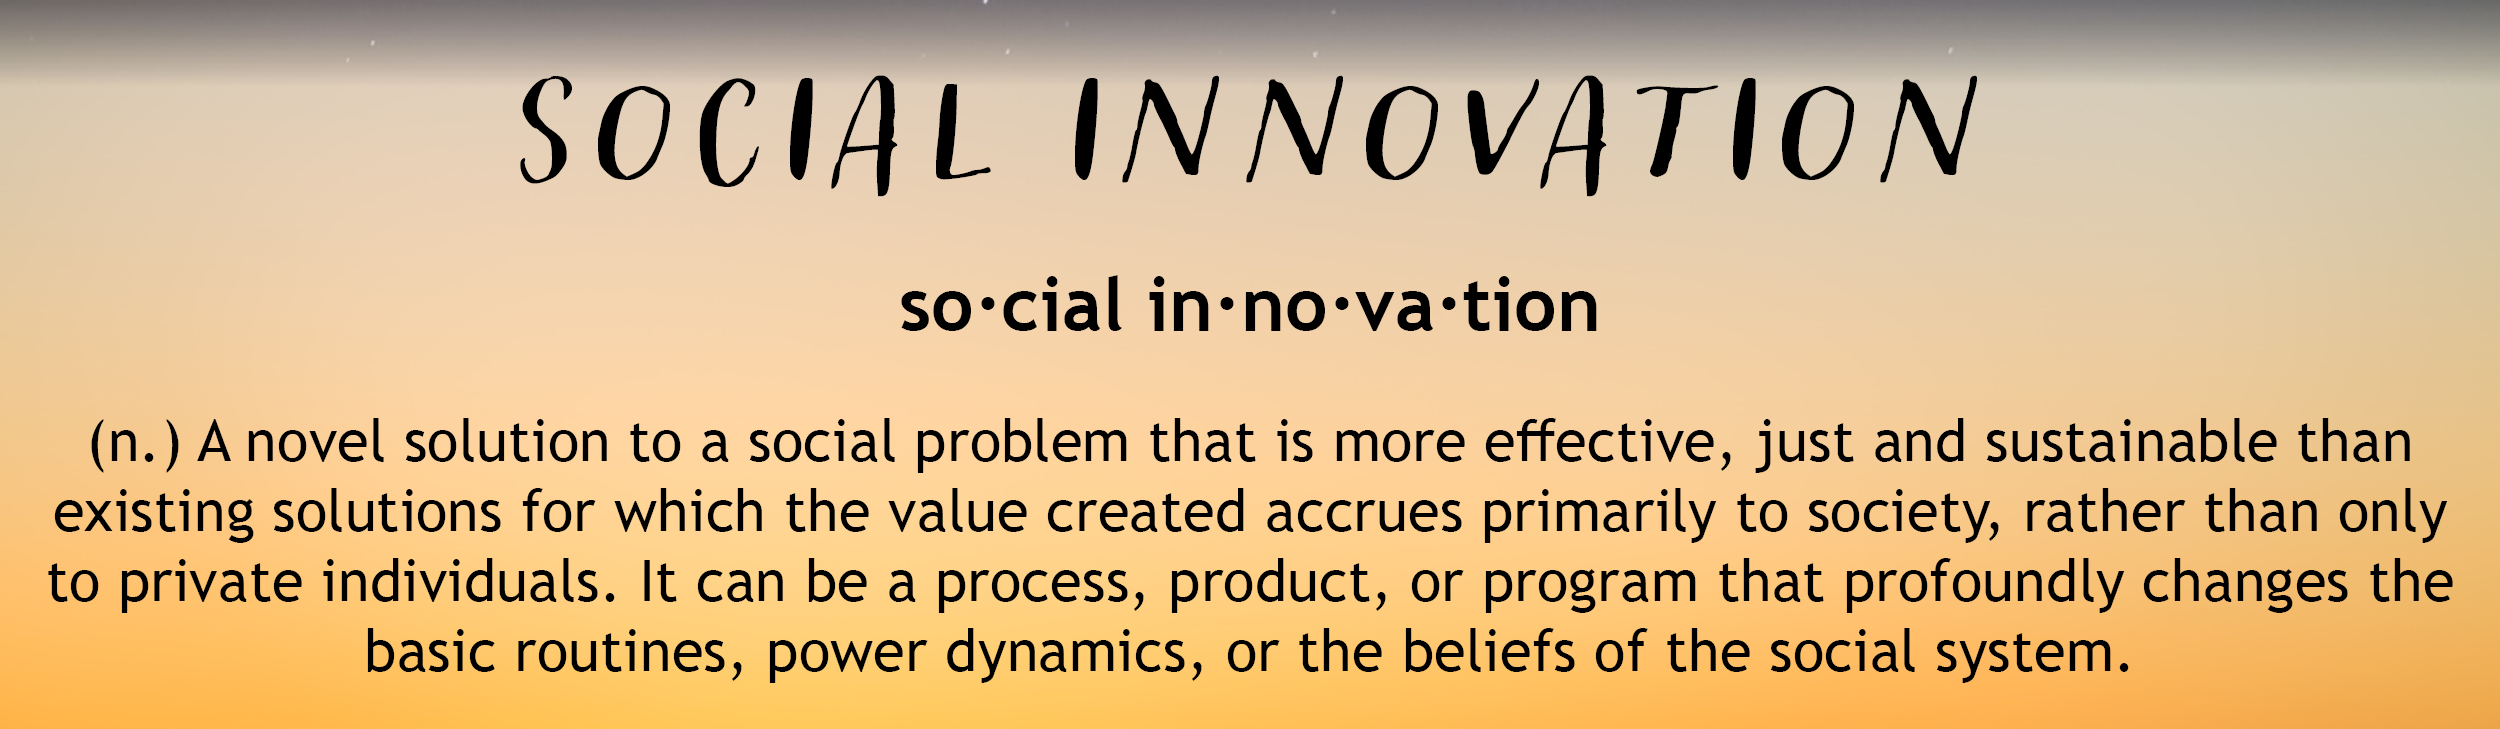 Social Innovation definition